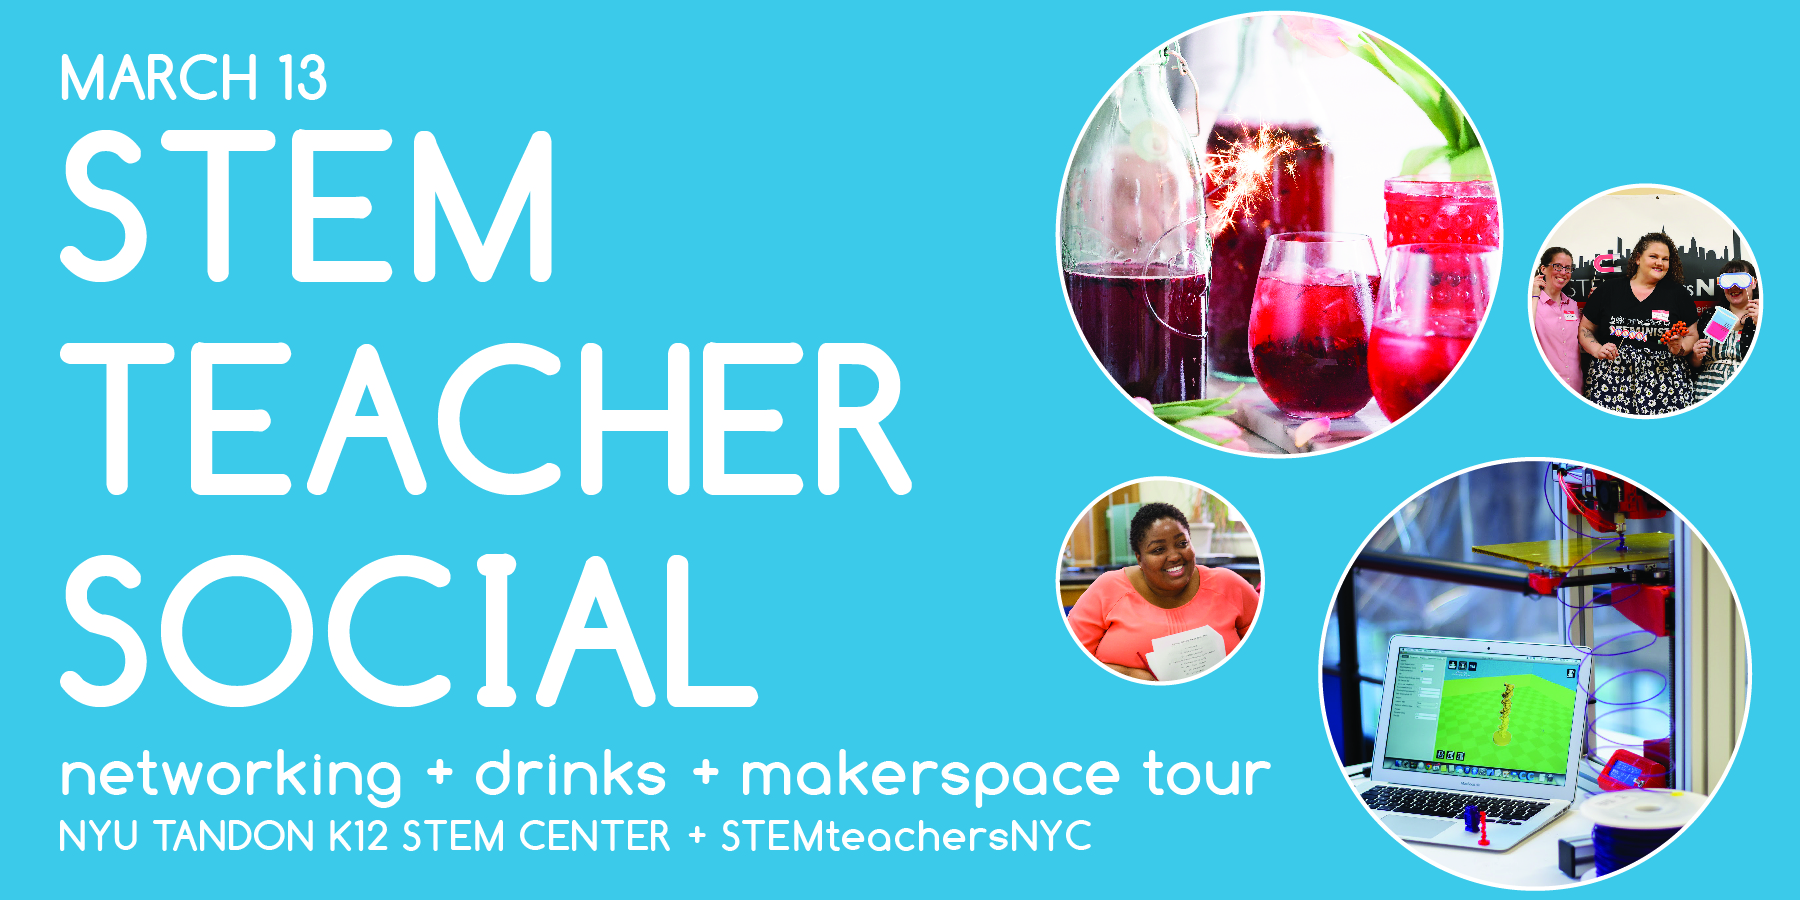 STEM Teacher Social at NYU!